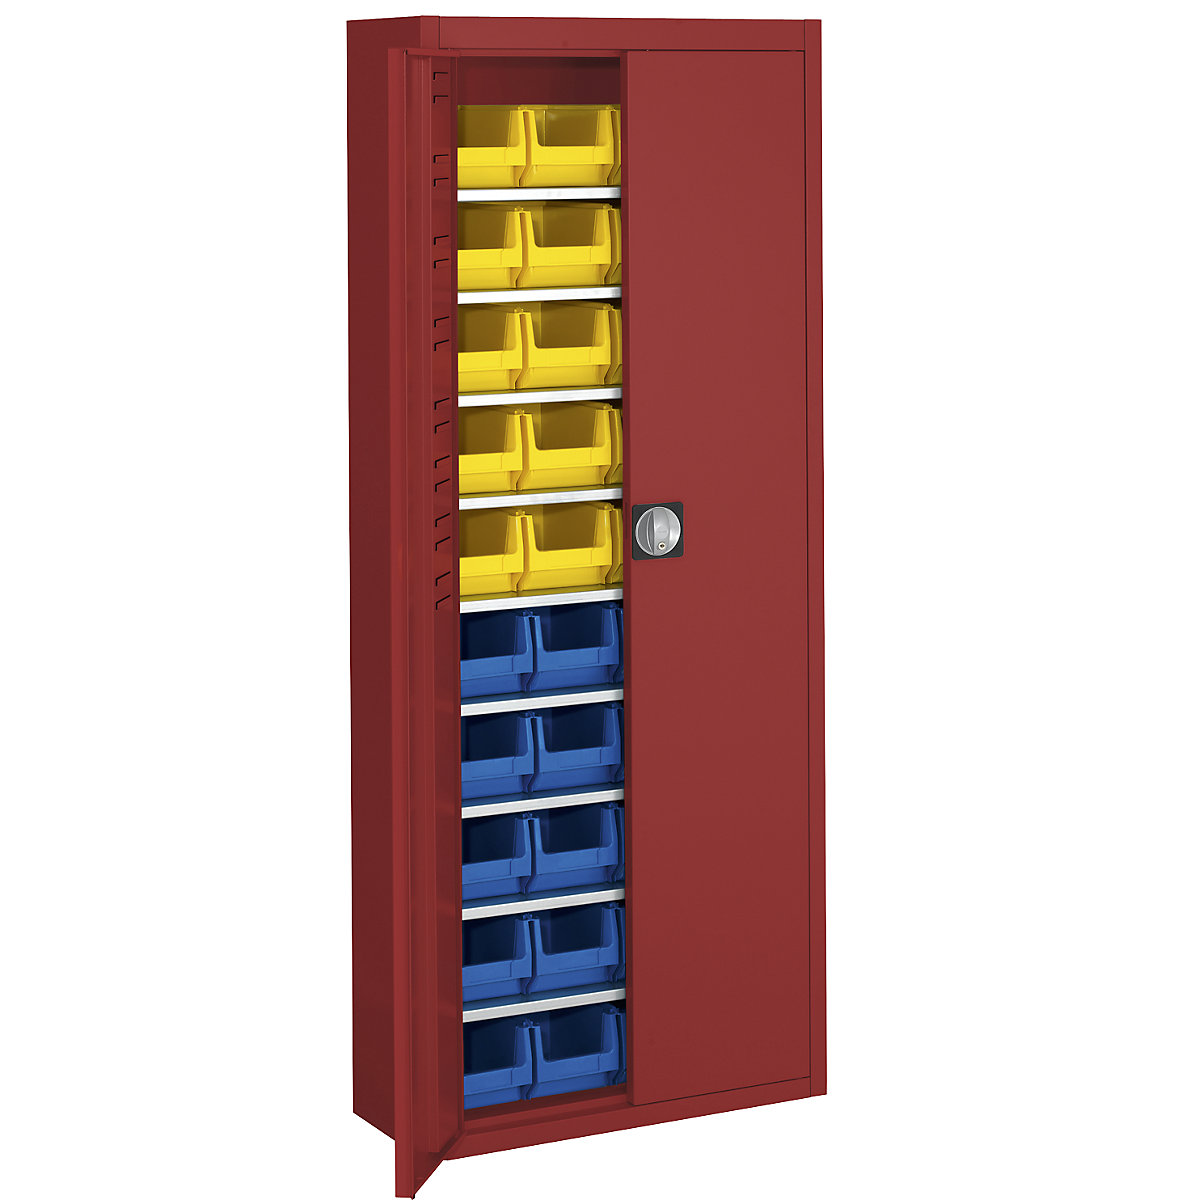 Skladová skříň s přepravkami s viditelným obsahem – mauser, v x š x h 1740 x 680 x 280 mm, jednobarevné, červená, 40 přepravek-17